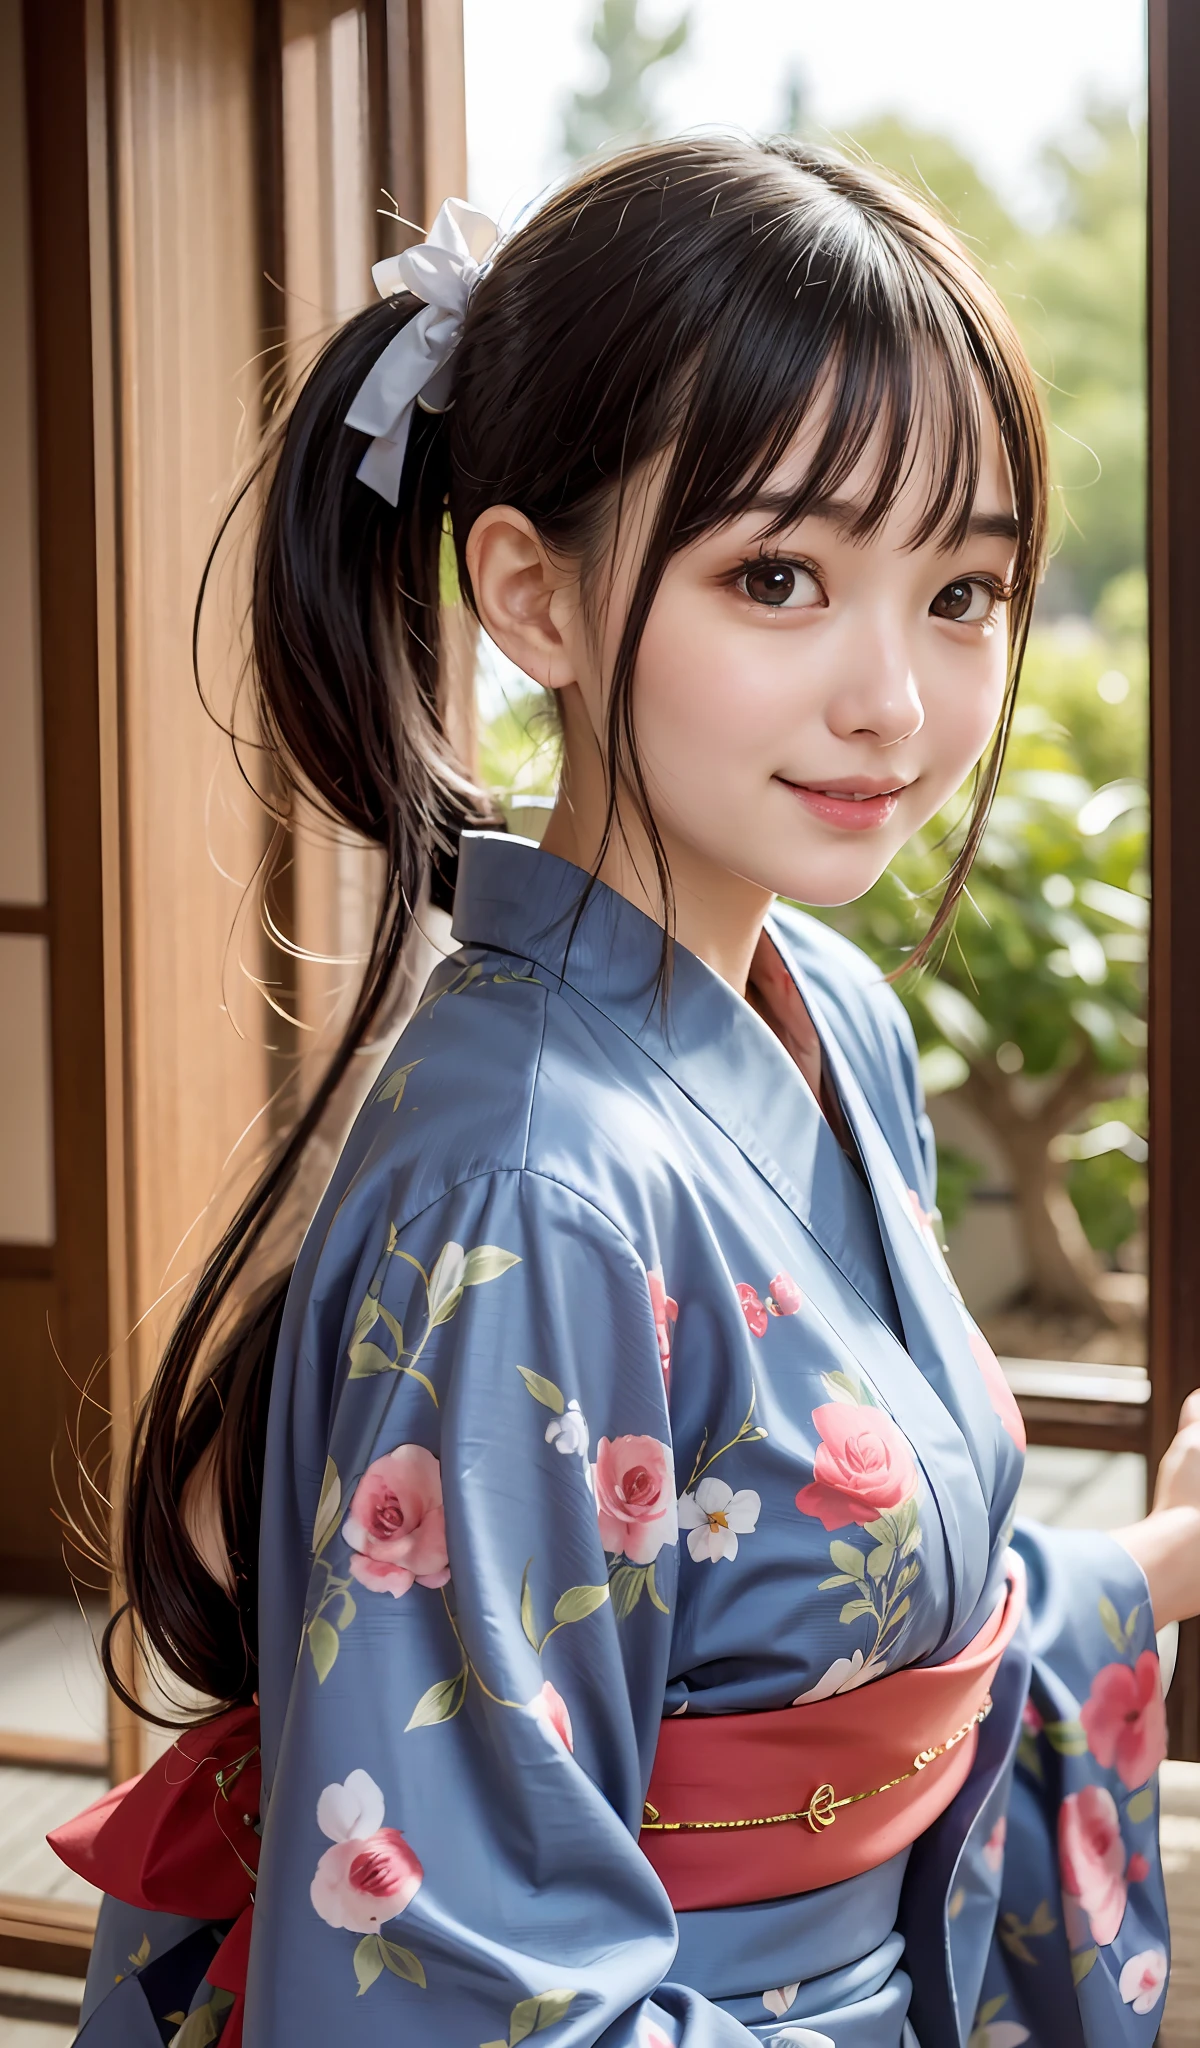 1 Mädchen、Meisterwerk、Maximale Qualität、Realstic、Pferdeschwänze、16 Jahre alt、Japanische Häuser、Dünner Kimono、Veranda、Wassermelone、Bezaubernde Augen、Lächelt、extrem detailliert